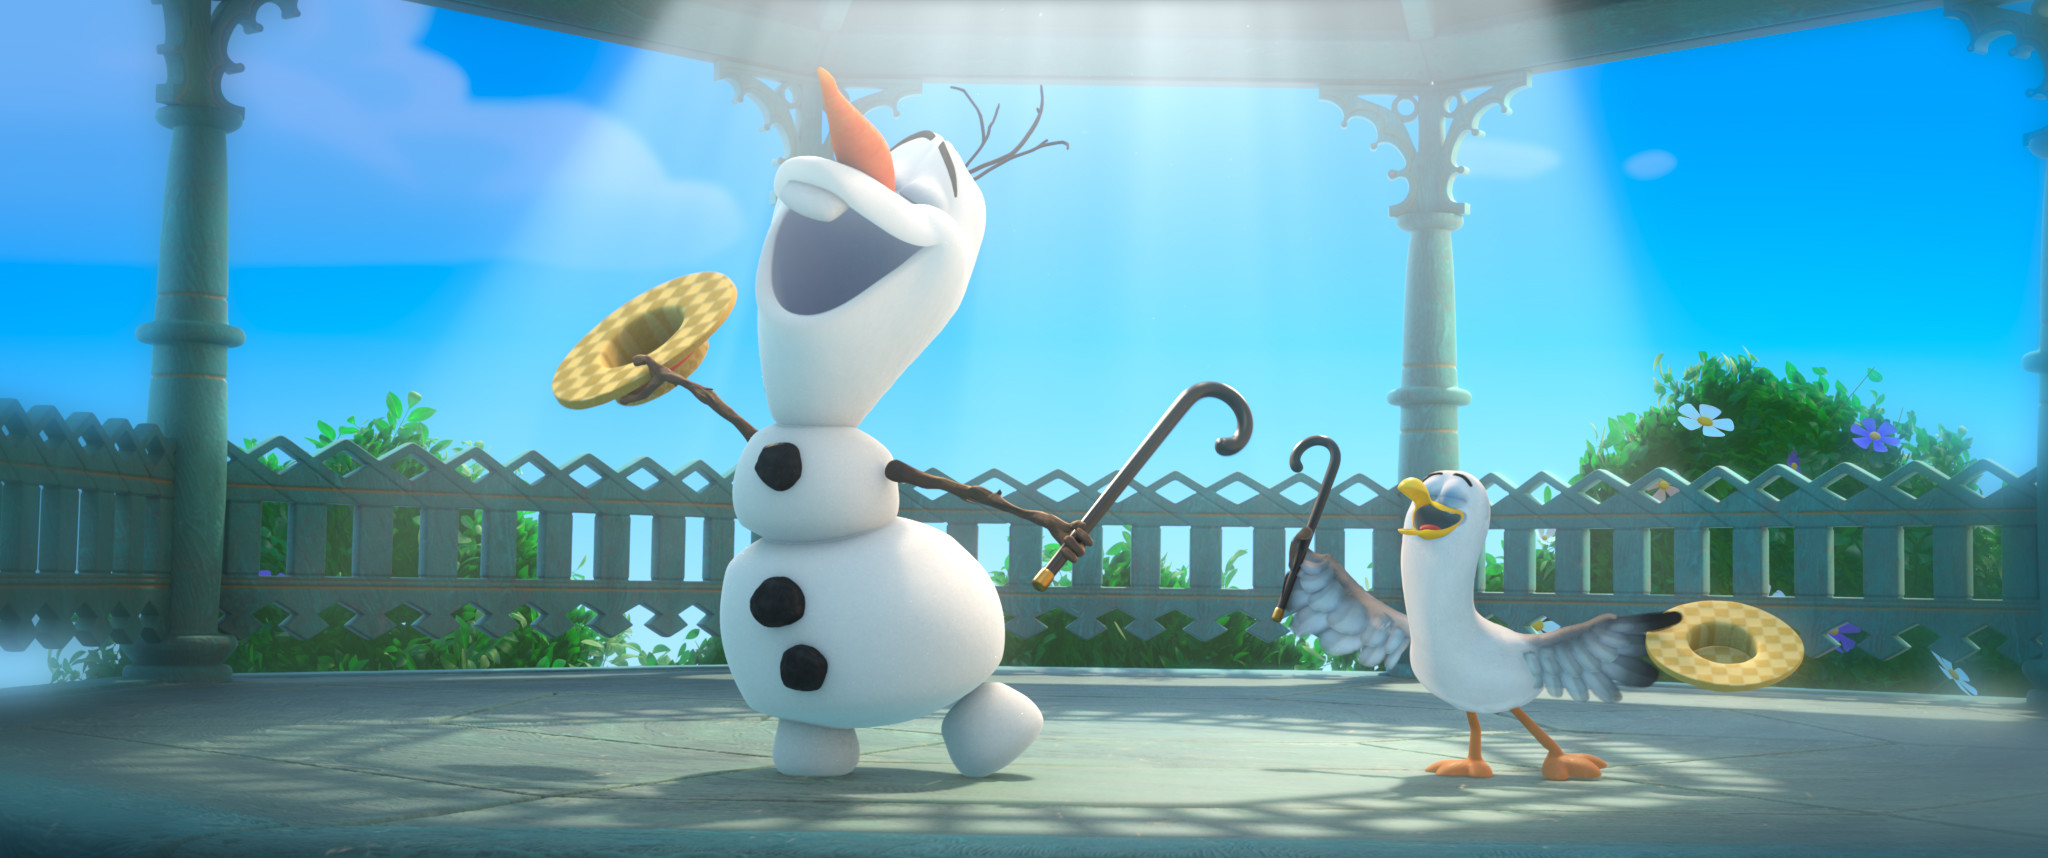 D23 EXPO Proudly Presents Frozen FANdemonium: A Musical Celebration!